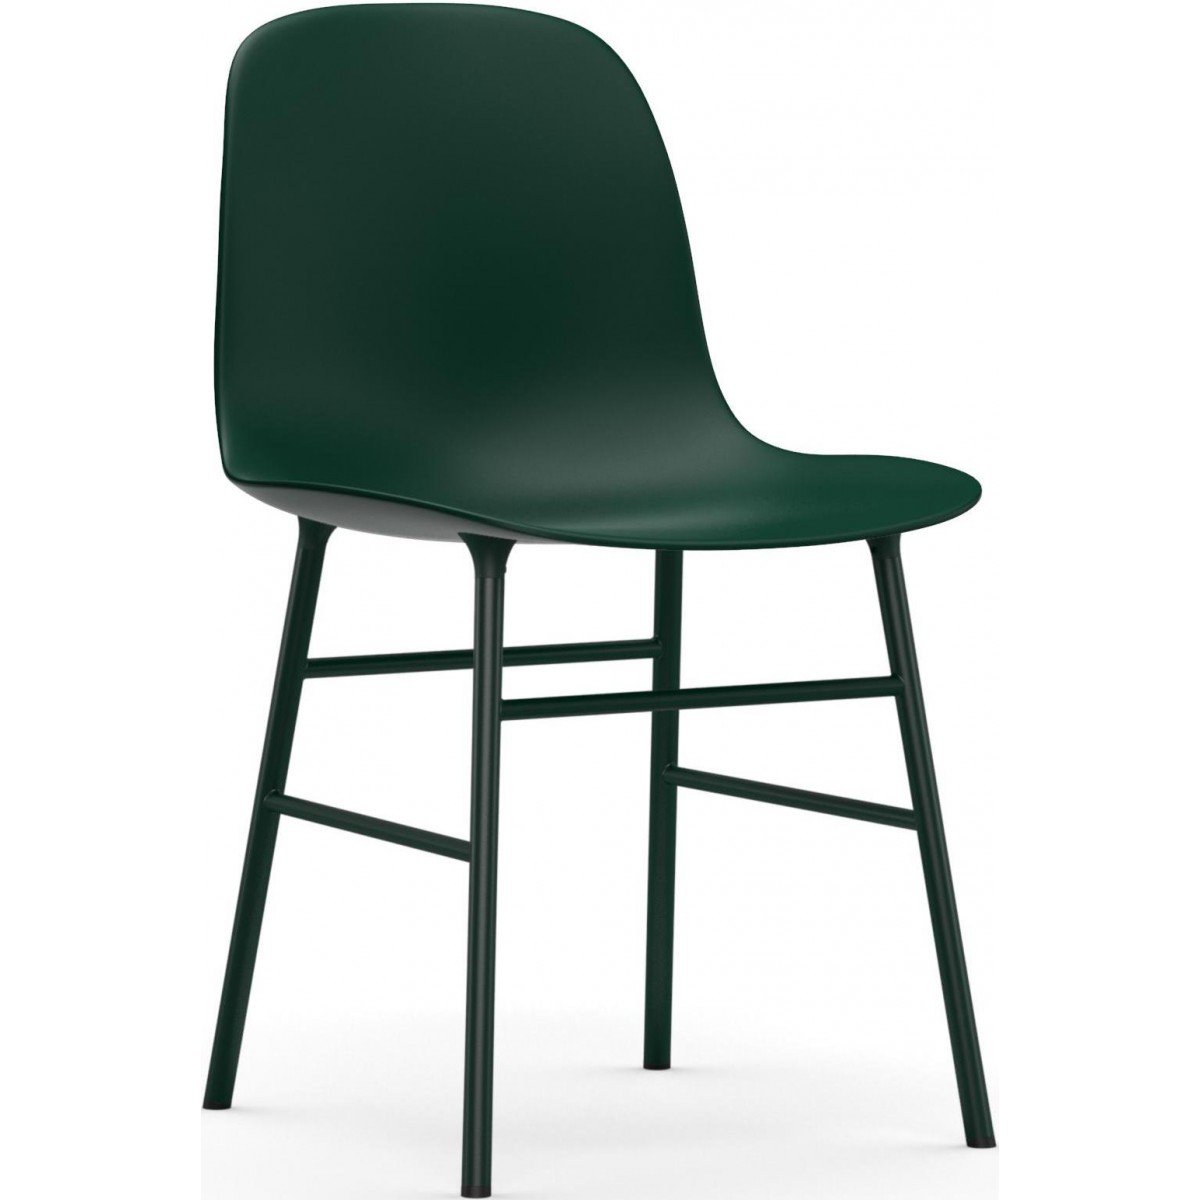 vert / vert – Chaise Form